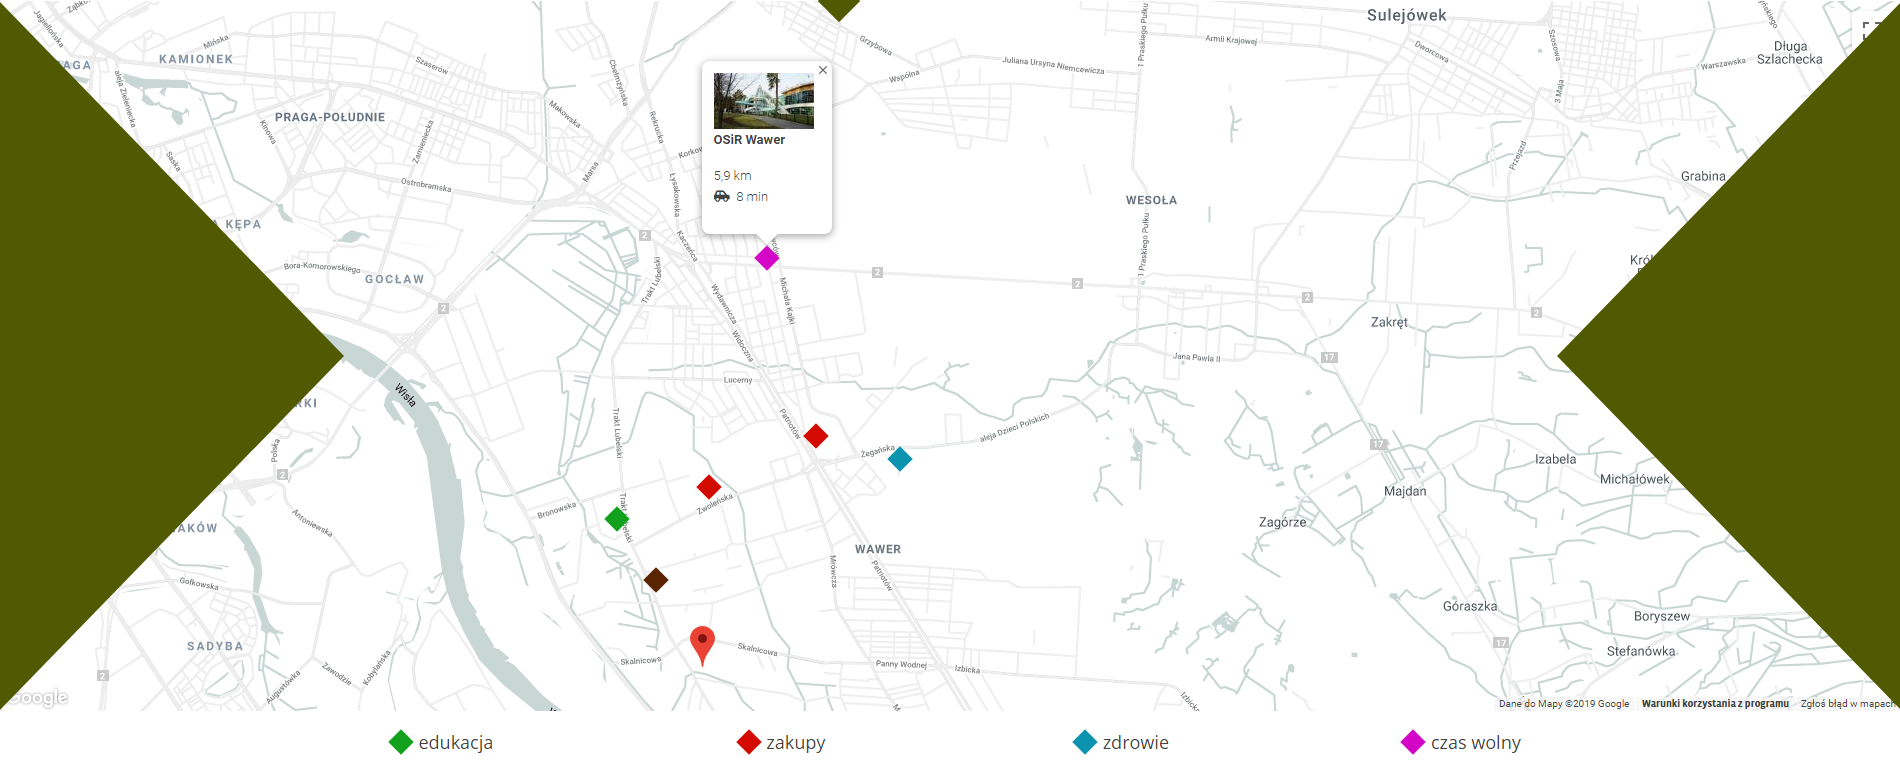 interaktywna mapa z ikonami ze strony wojtyszki/ostoja wawer (realizacja Krakweb)